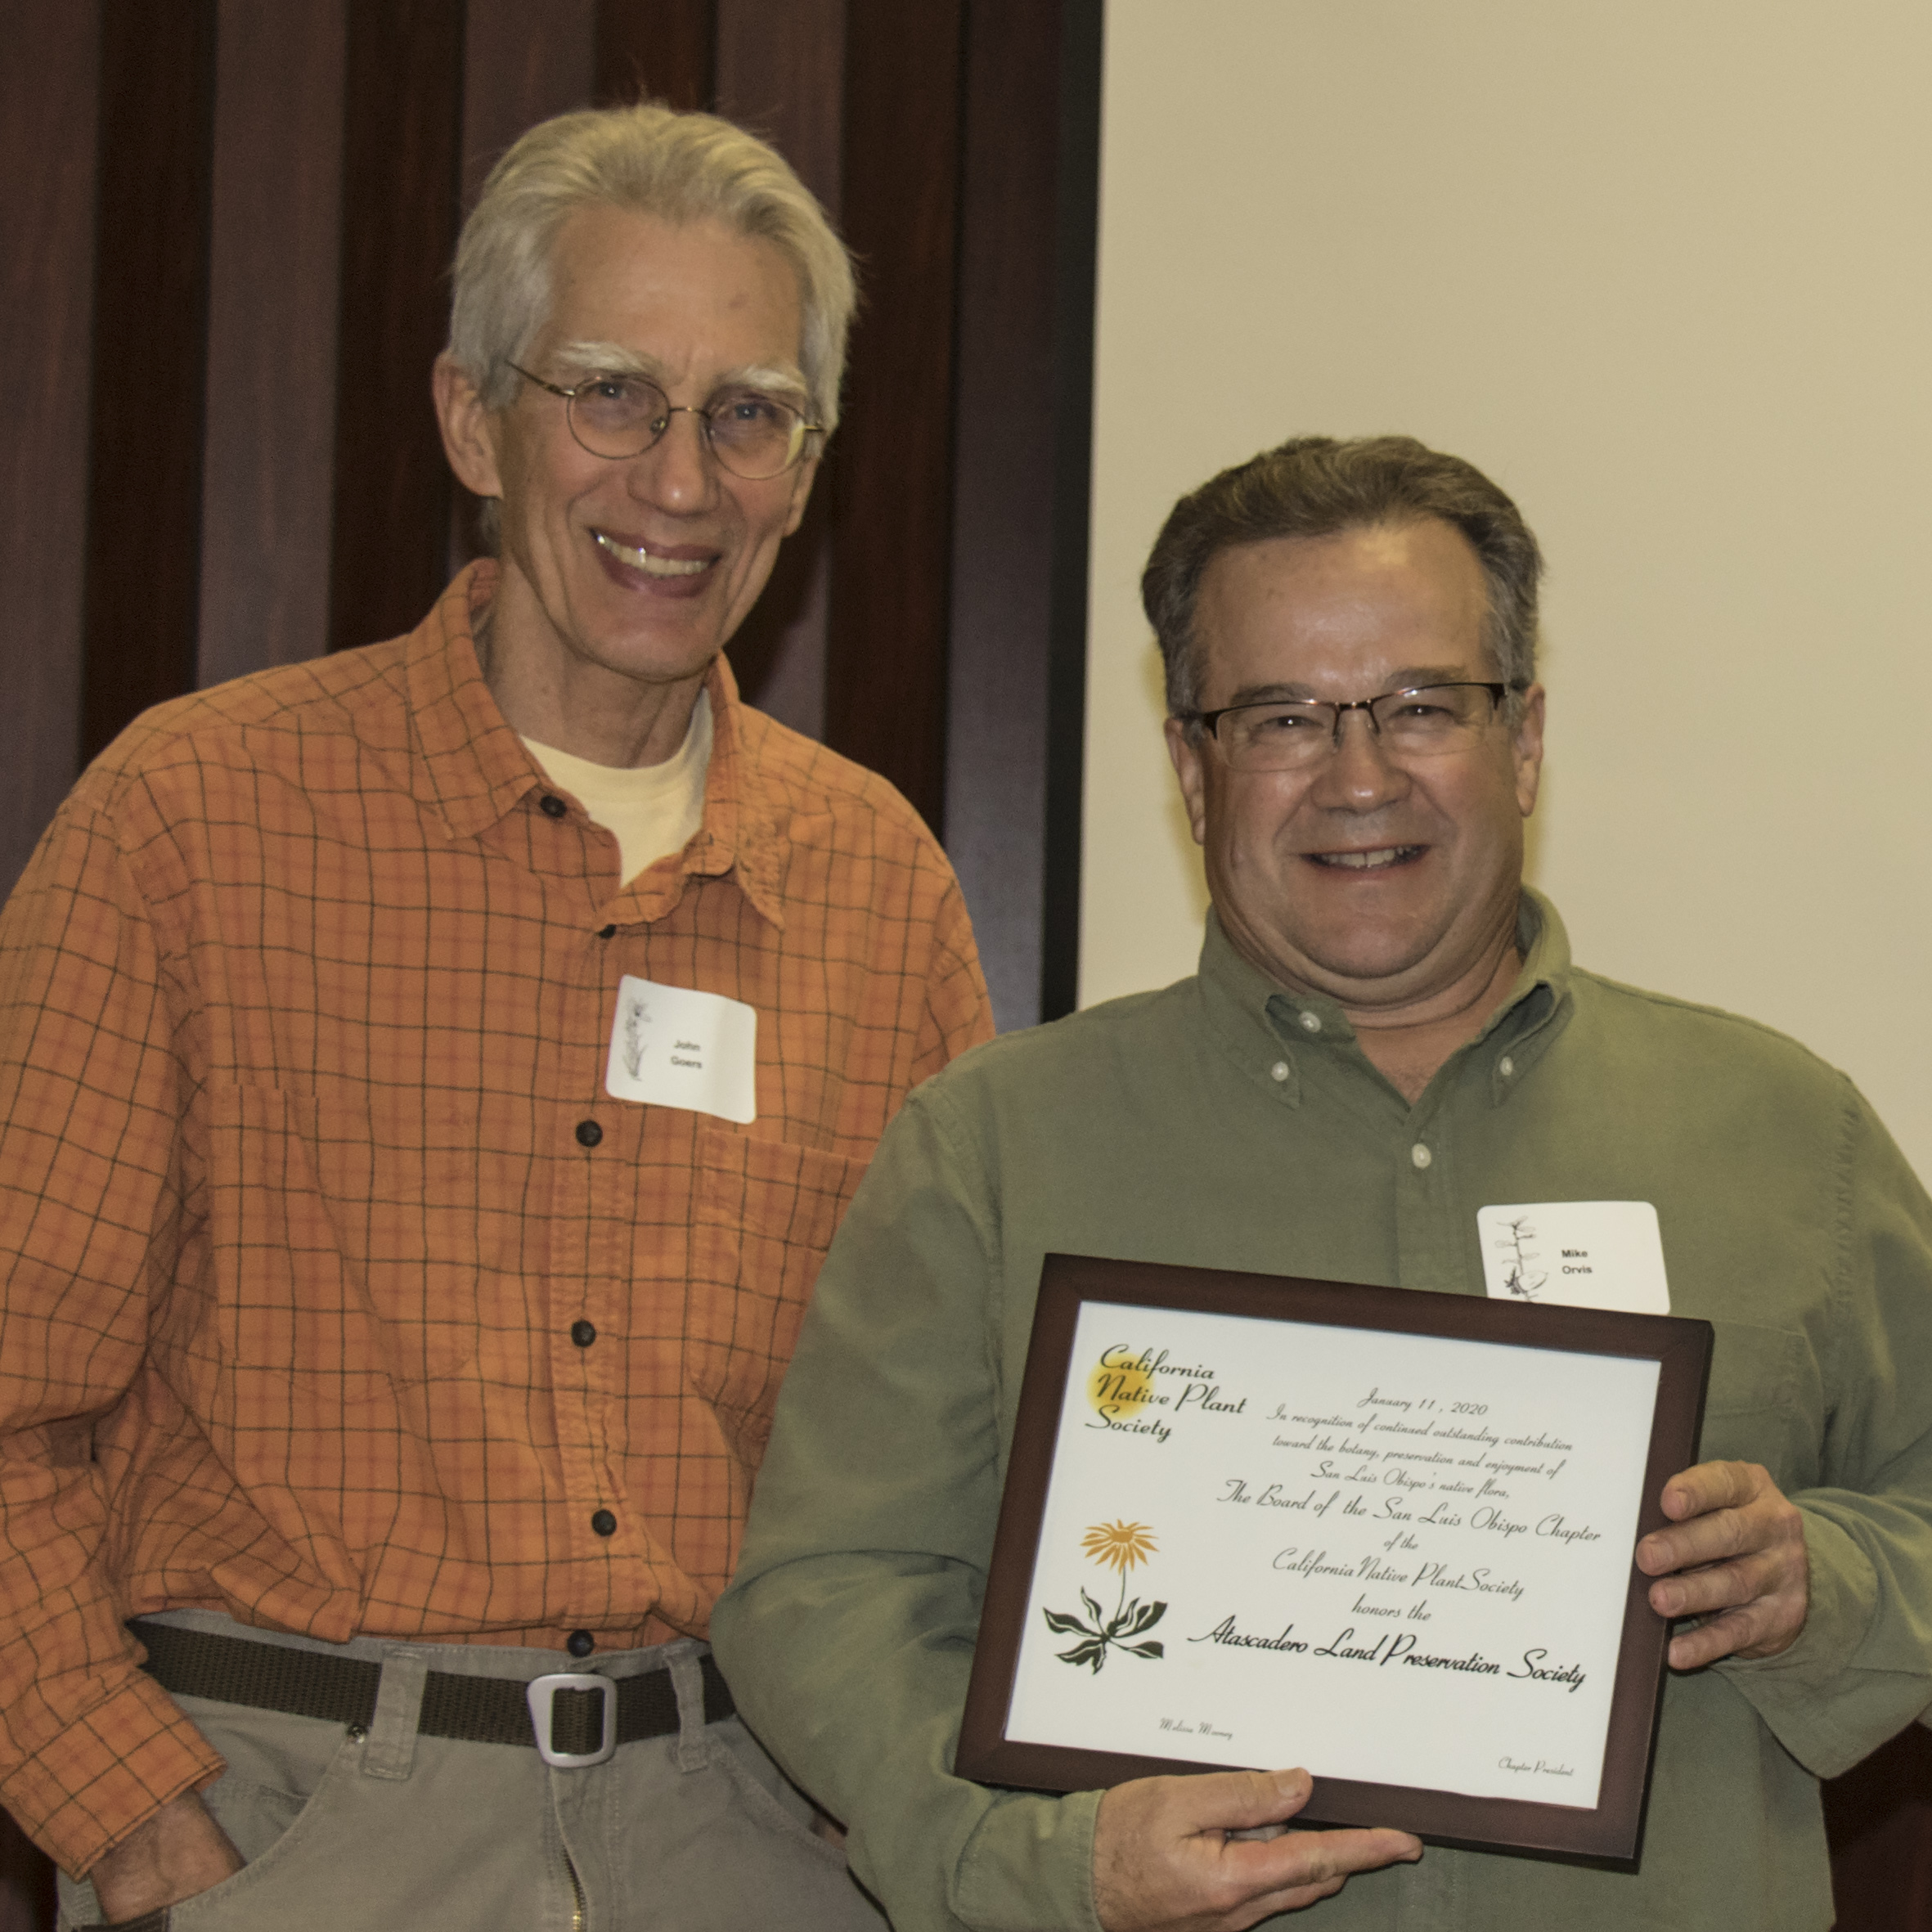 John Goers & Mike Orvis Community Award